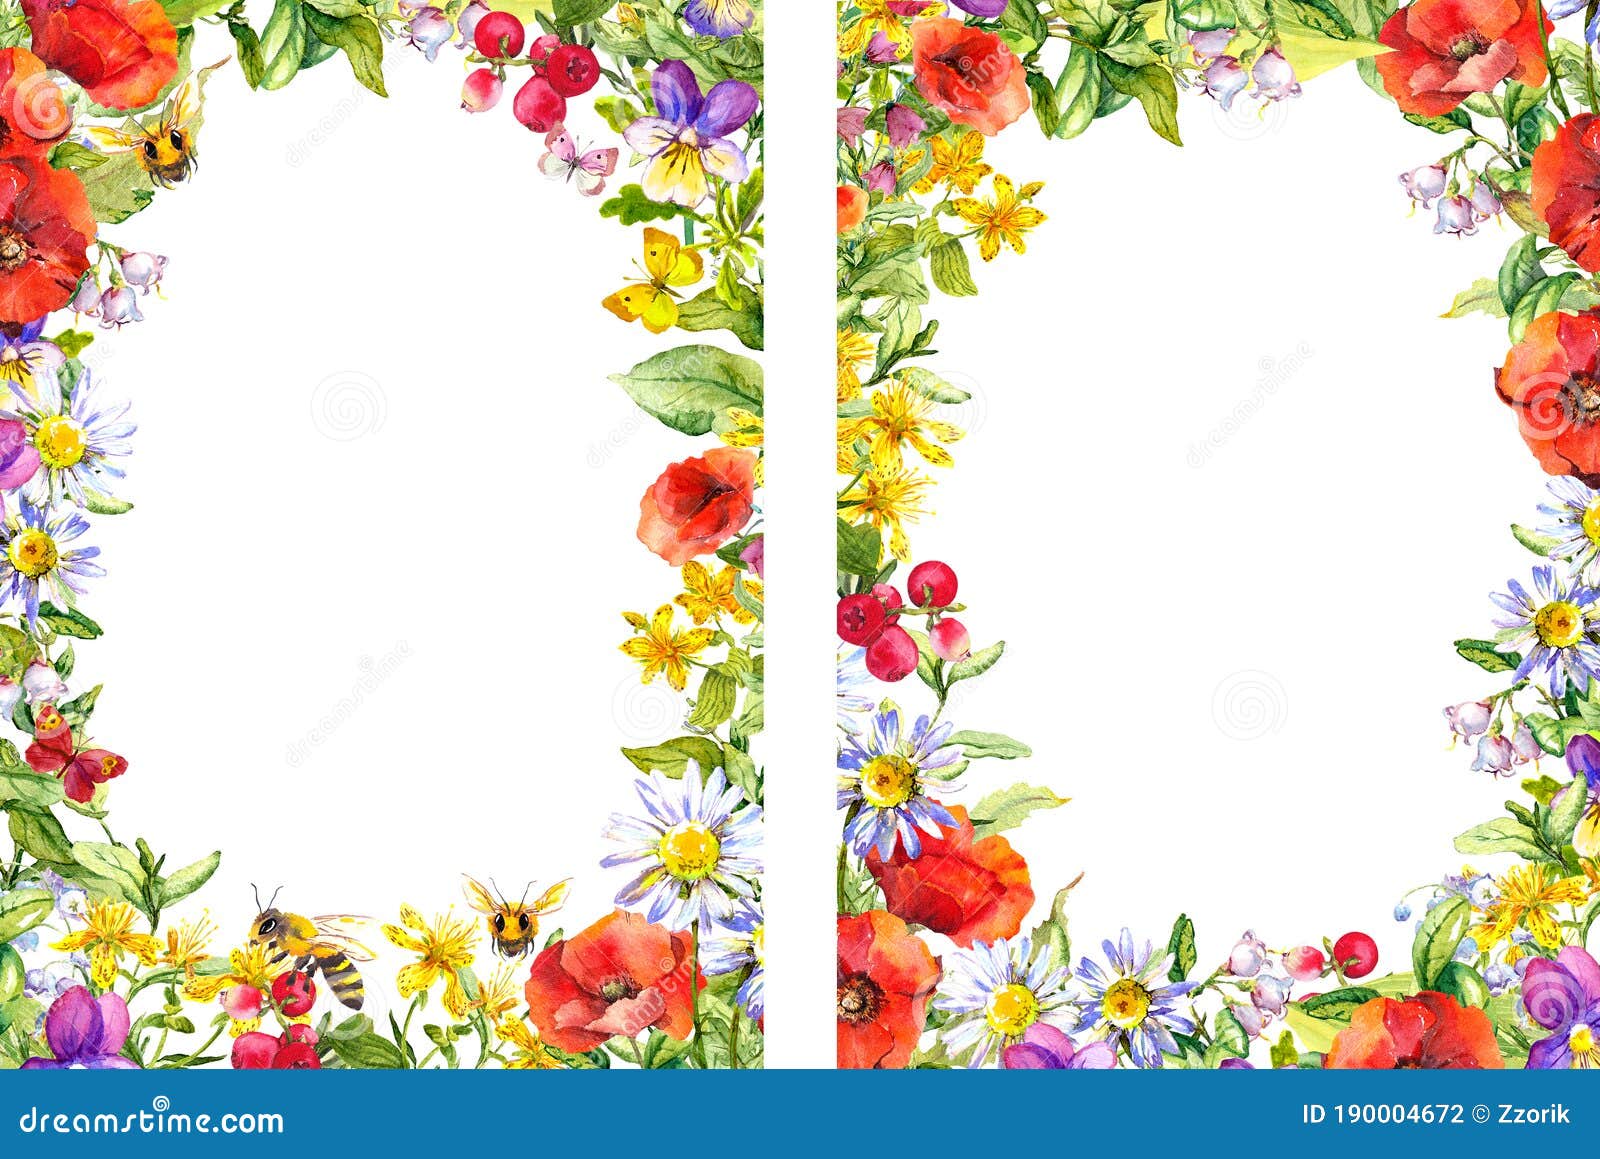 summer frames for 5x7 summer floral flyers . flowers, meadow grass, butterflies, bees. watercolour